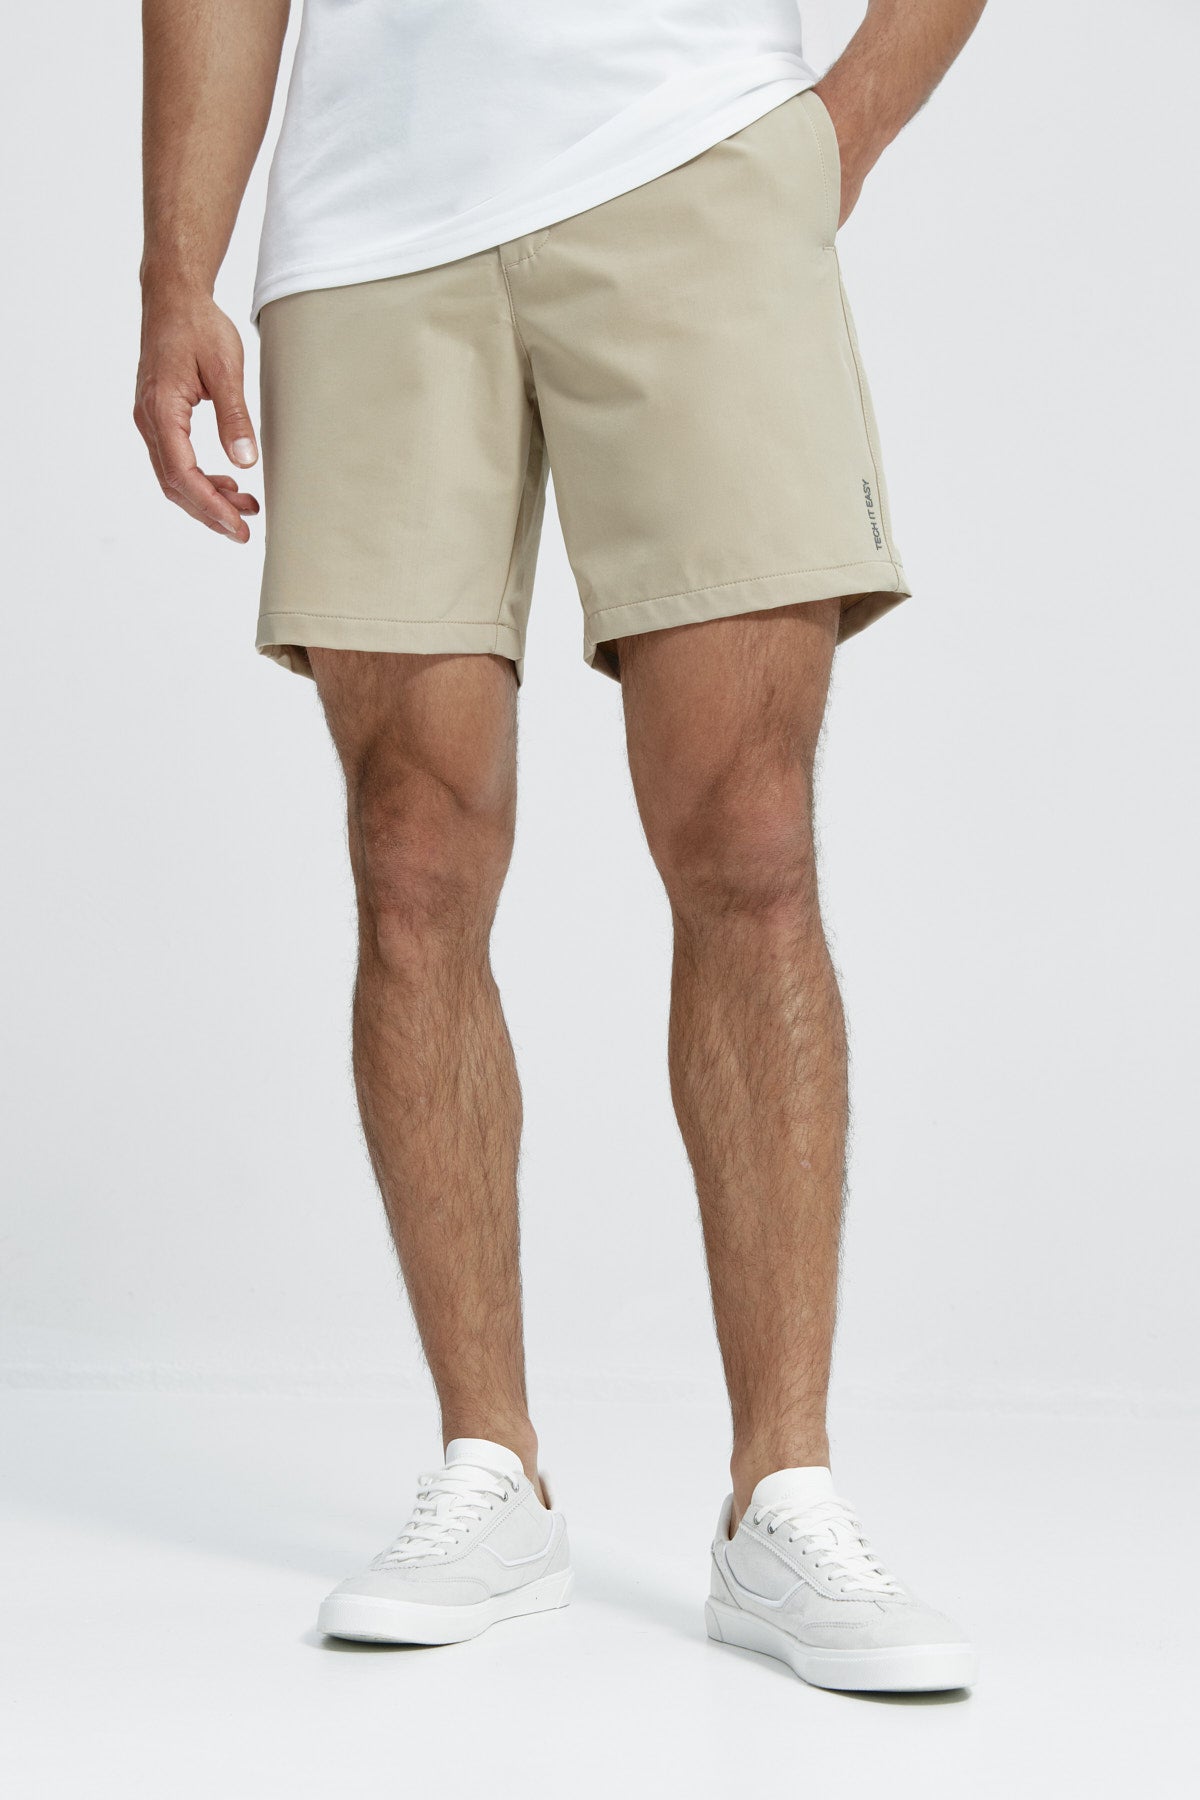 Pack pantalón corto + camiseta (hombre)